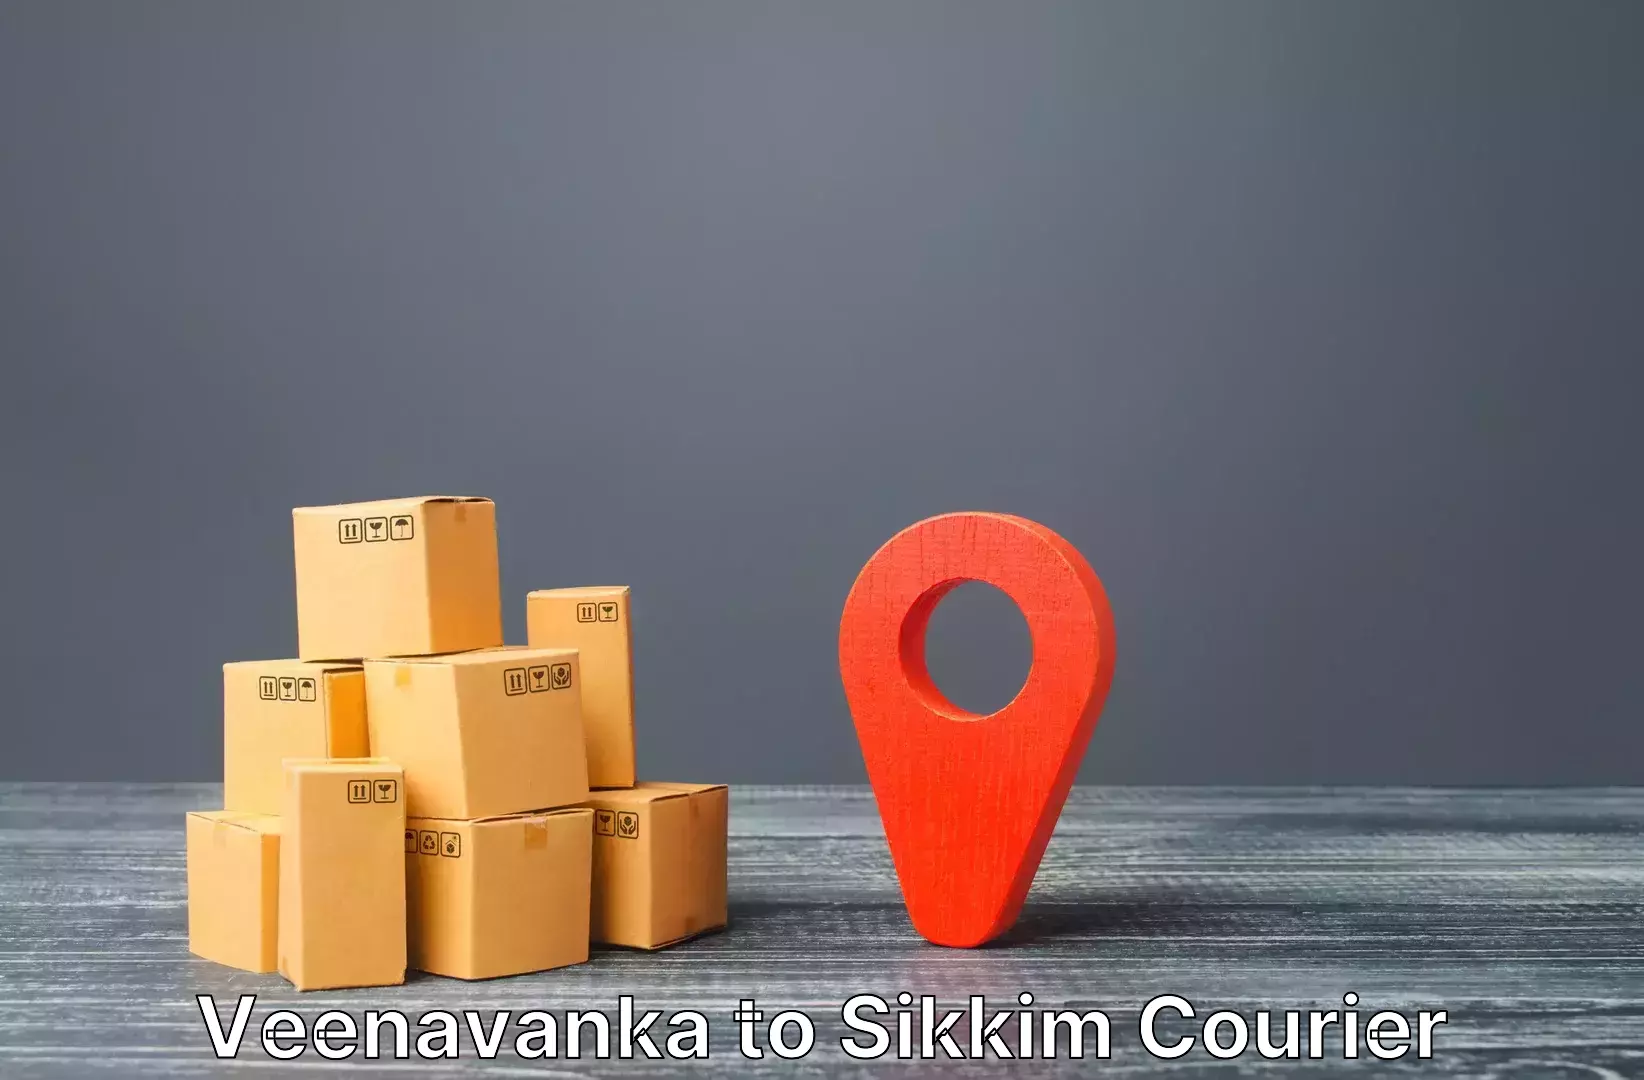 Airport luggage delivery Veenavanka to Pelling